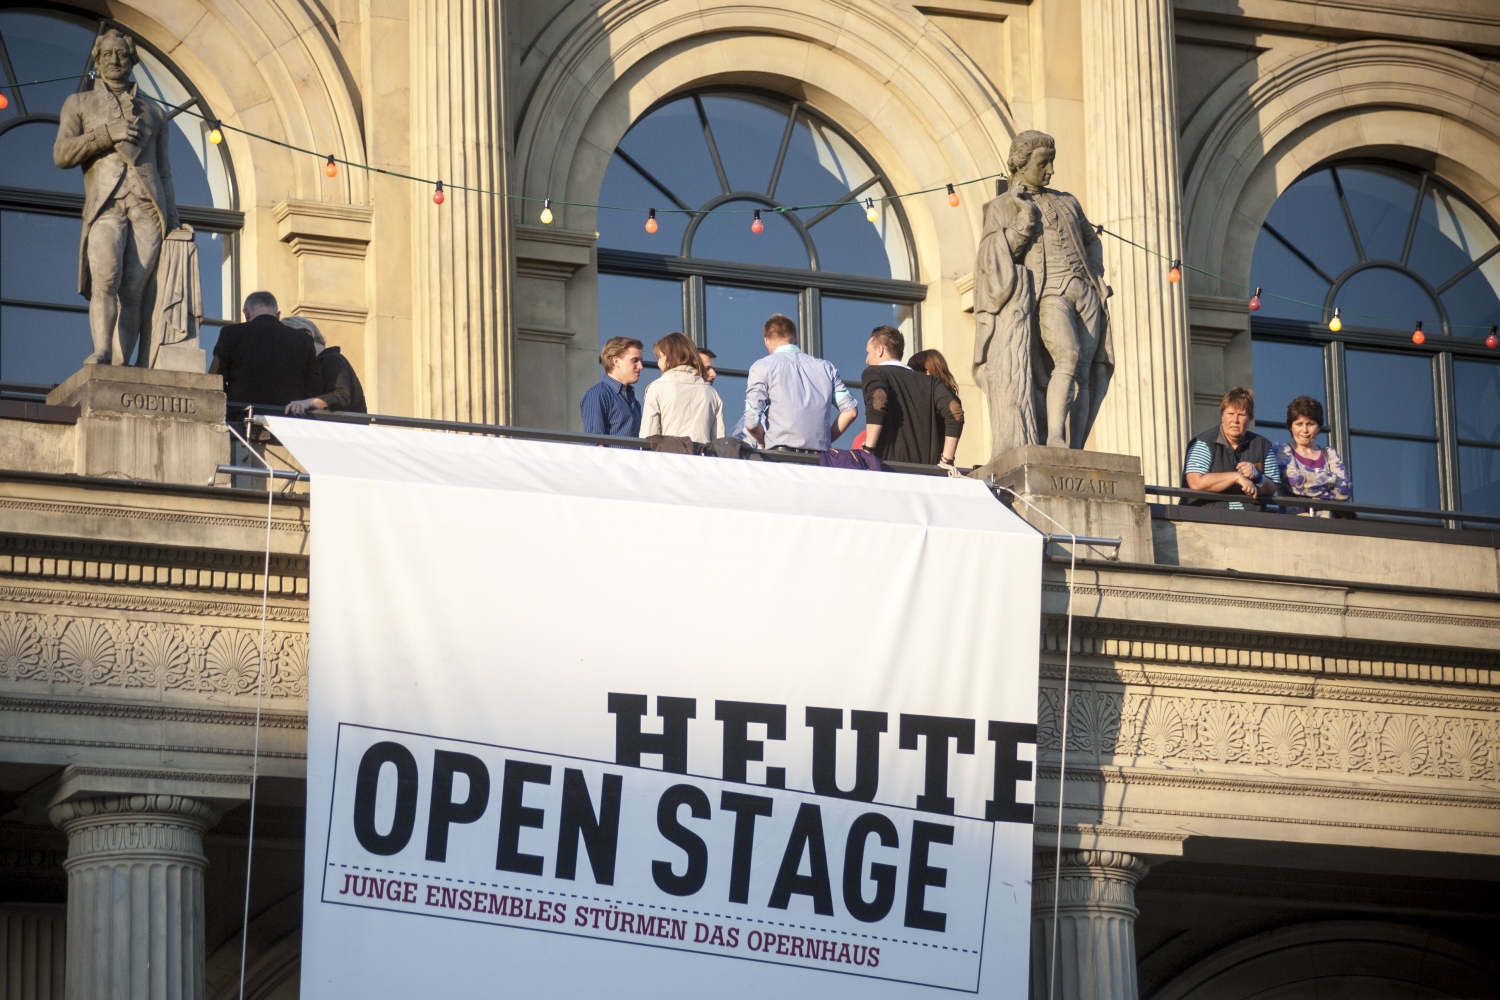 Auf dem Balkon des Opernhauses in Hannover stehen Menschen. An der Ballustrade ist ein Banner angebracht, auf dem "Heute Open Stage. Junge Ensembles stürmen das Opernhaus" steht.